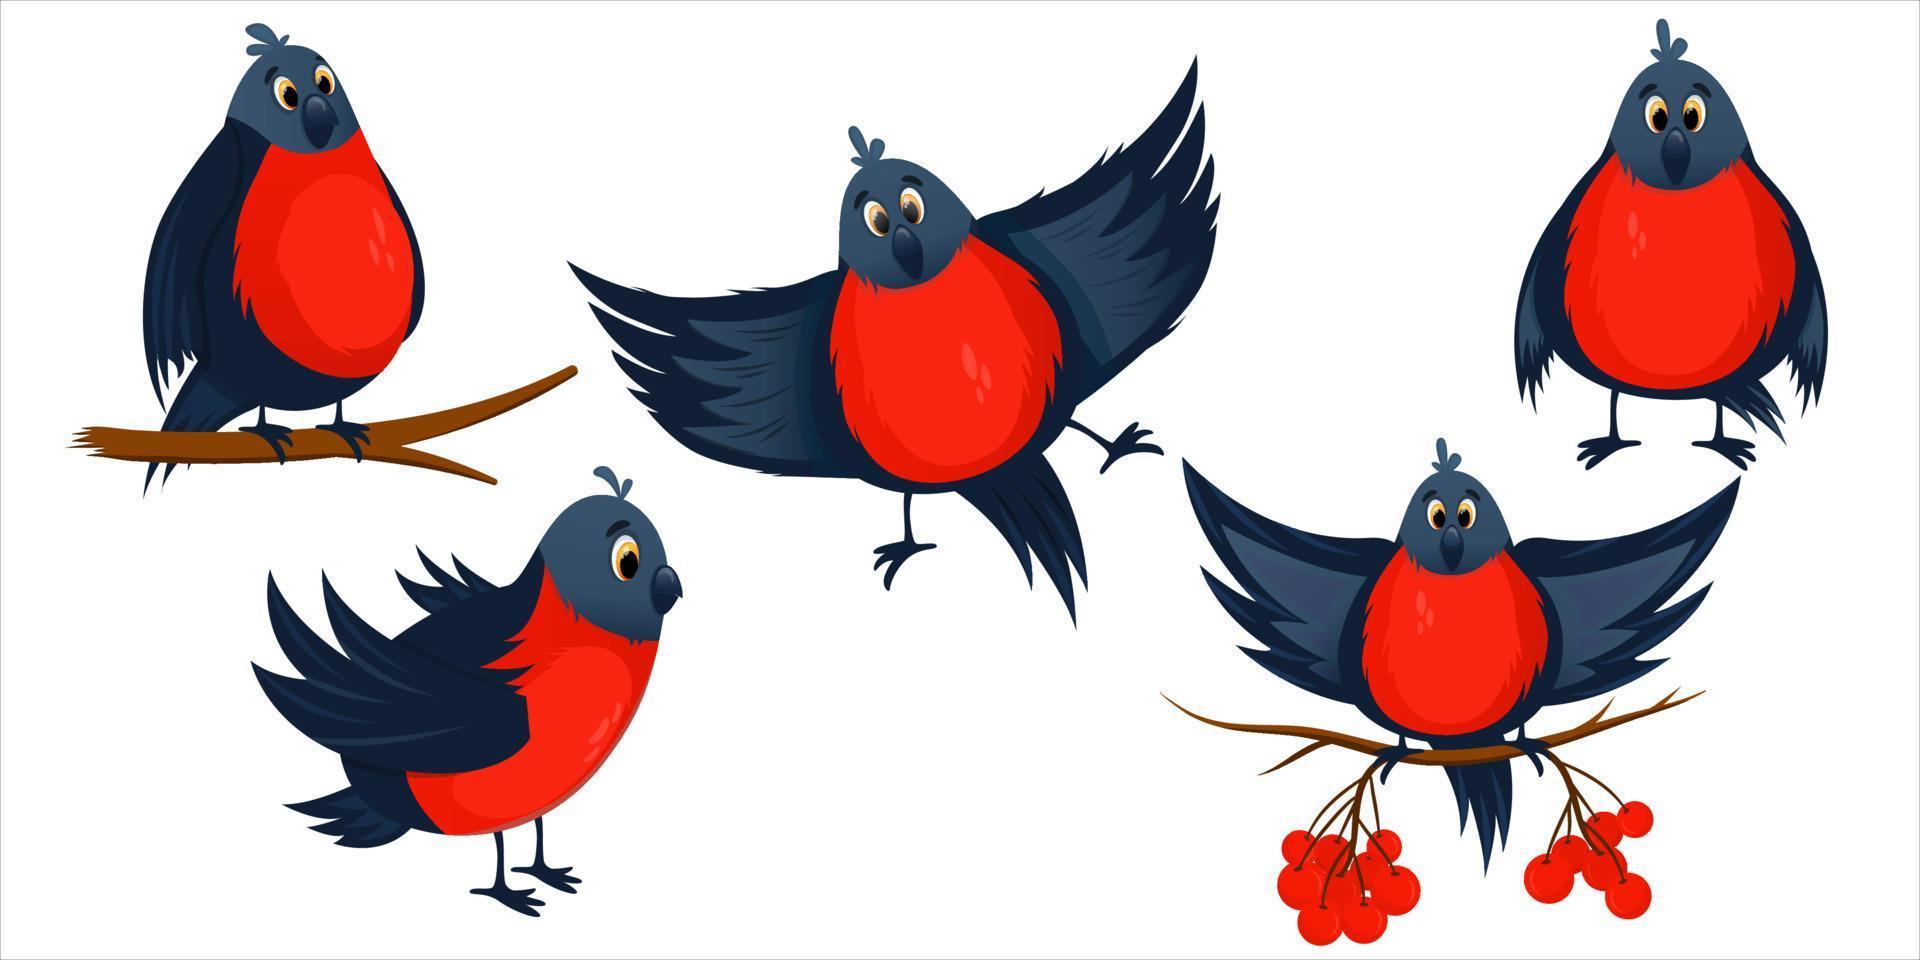 uccello del fumetto stabilito del ciuffolotto rosso isolato. bacche di sorbo e rami di albero con uccelli. ciuffolotti invernali luminosi in volo e seduti. carattere dell'uccello d'inverno. illustrazione vettoriale dei cartoni animati